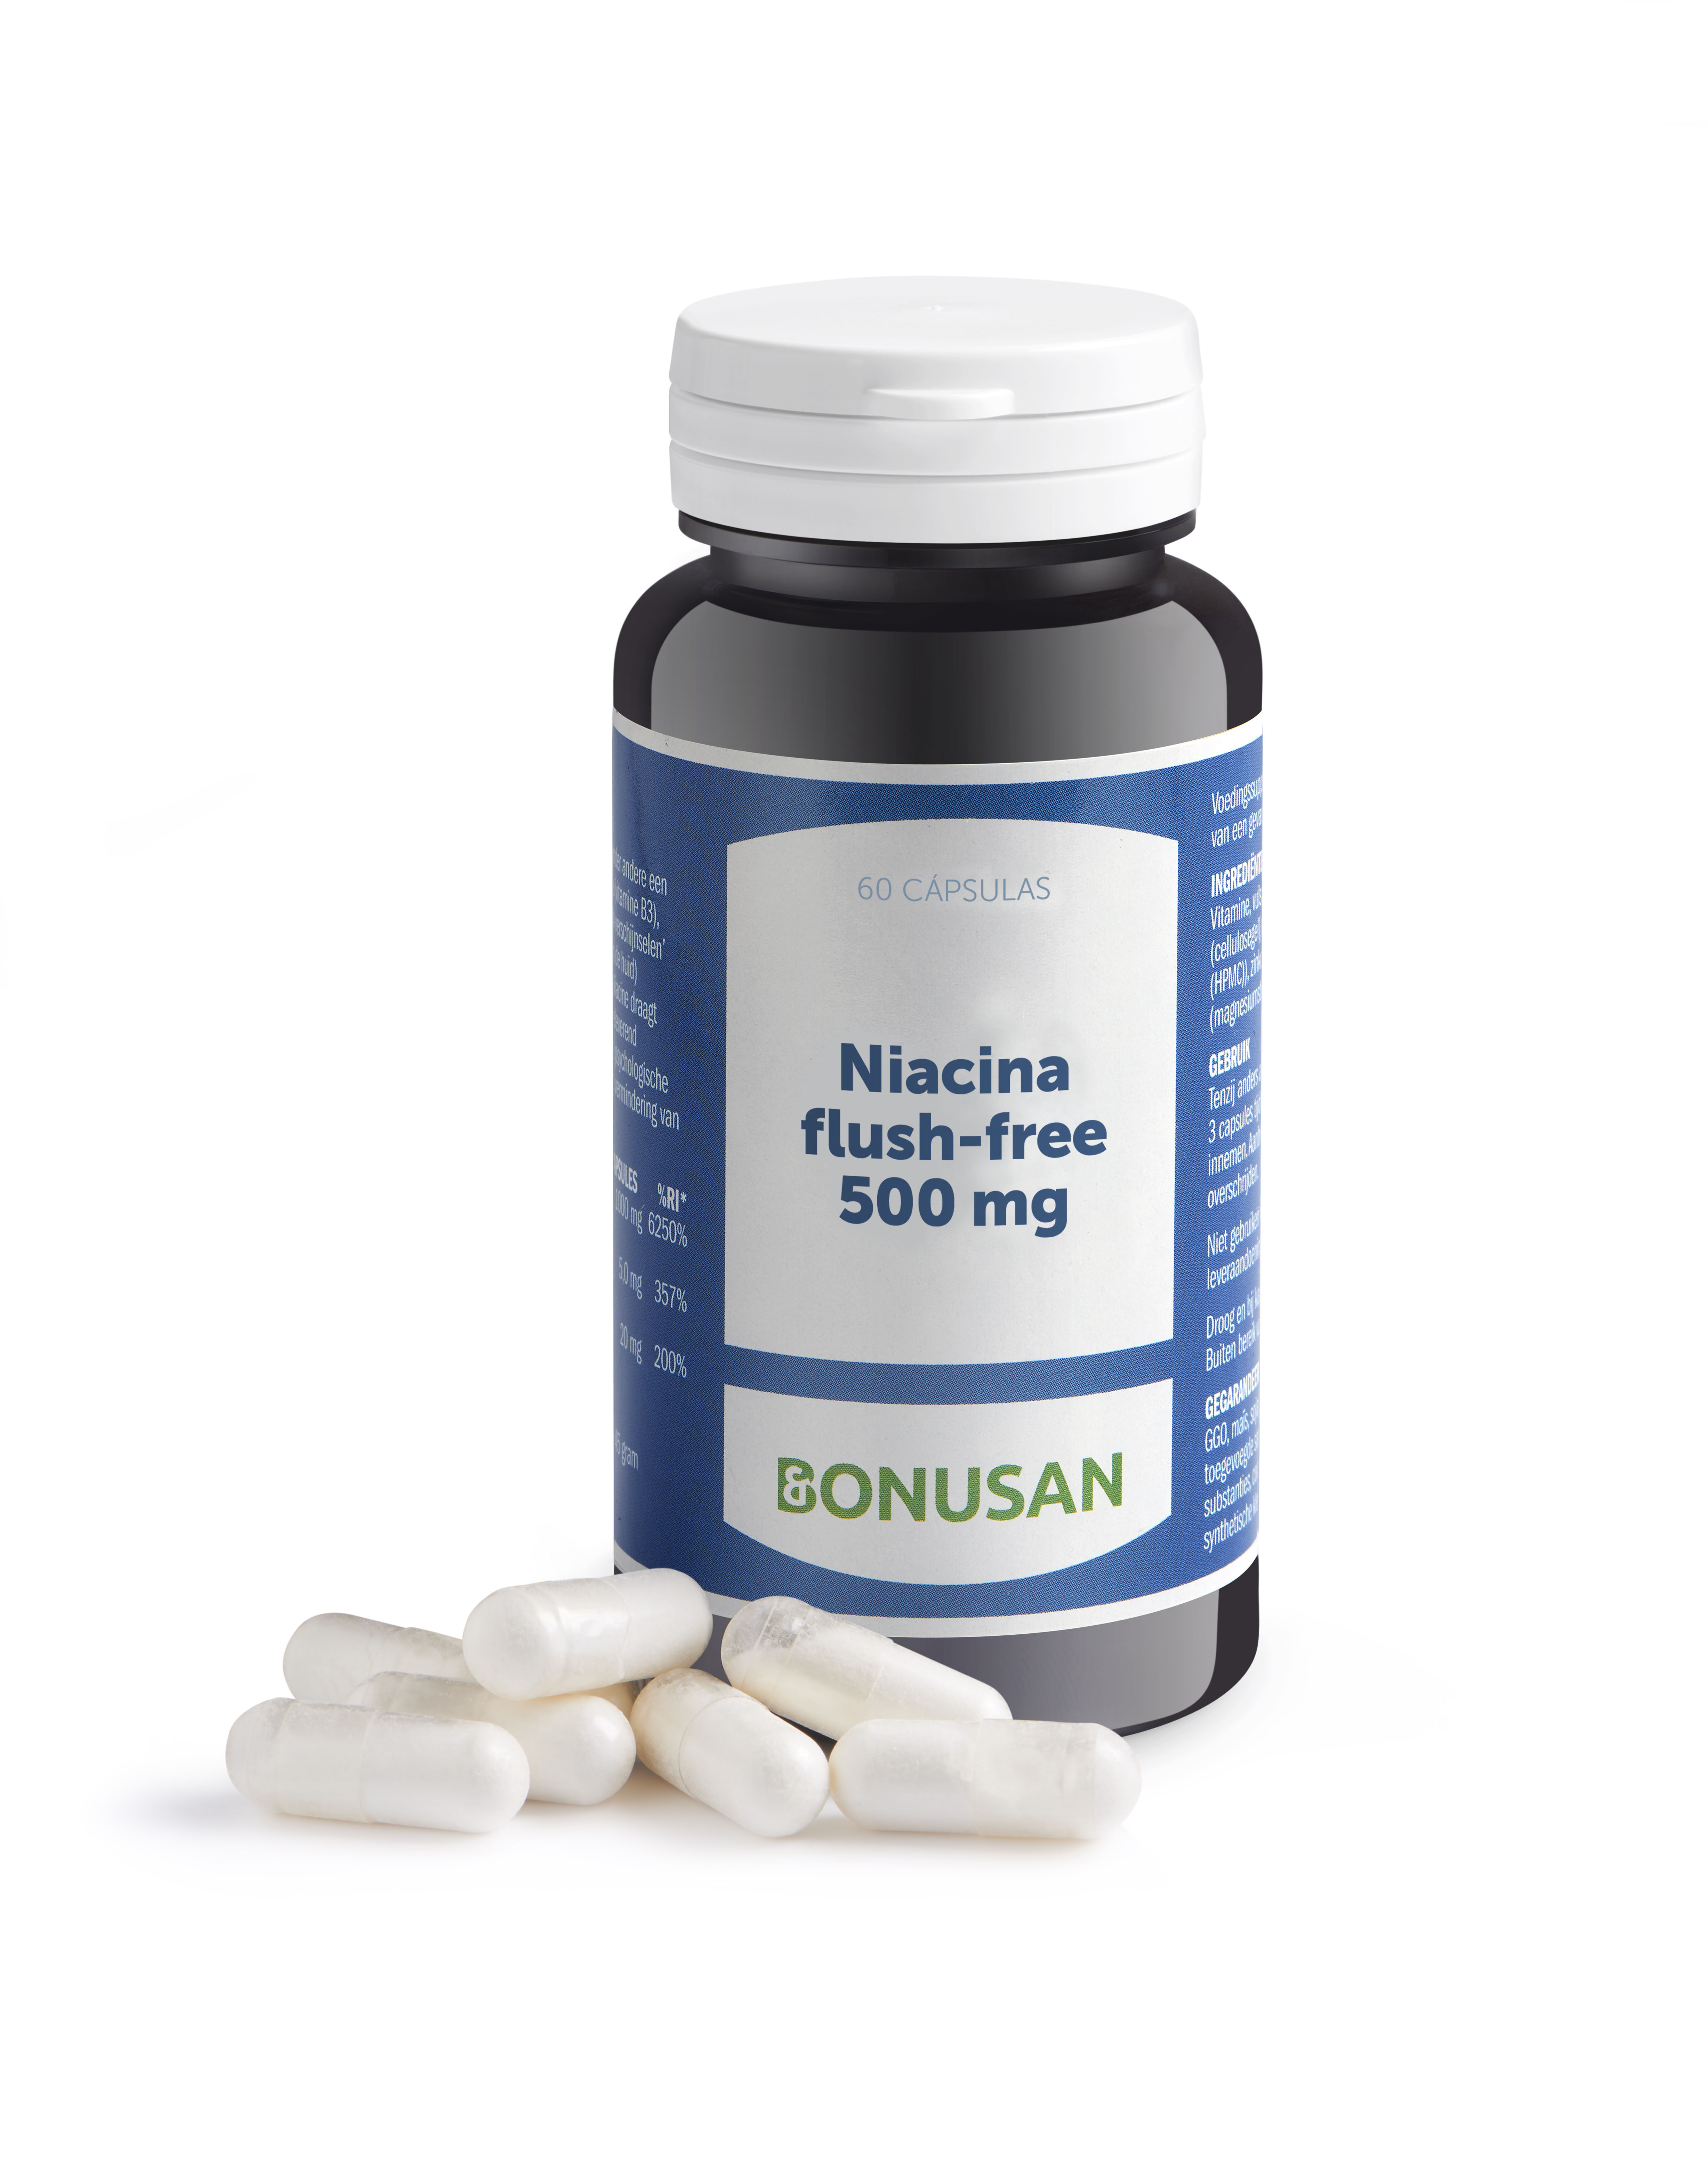 Niacina flush-free 500 mg